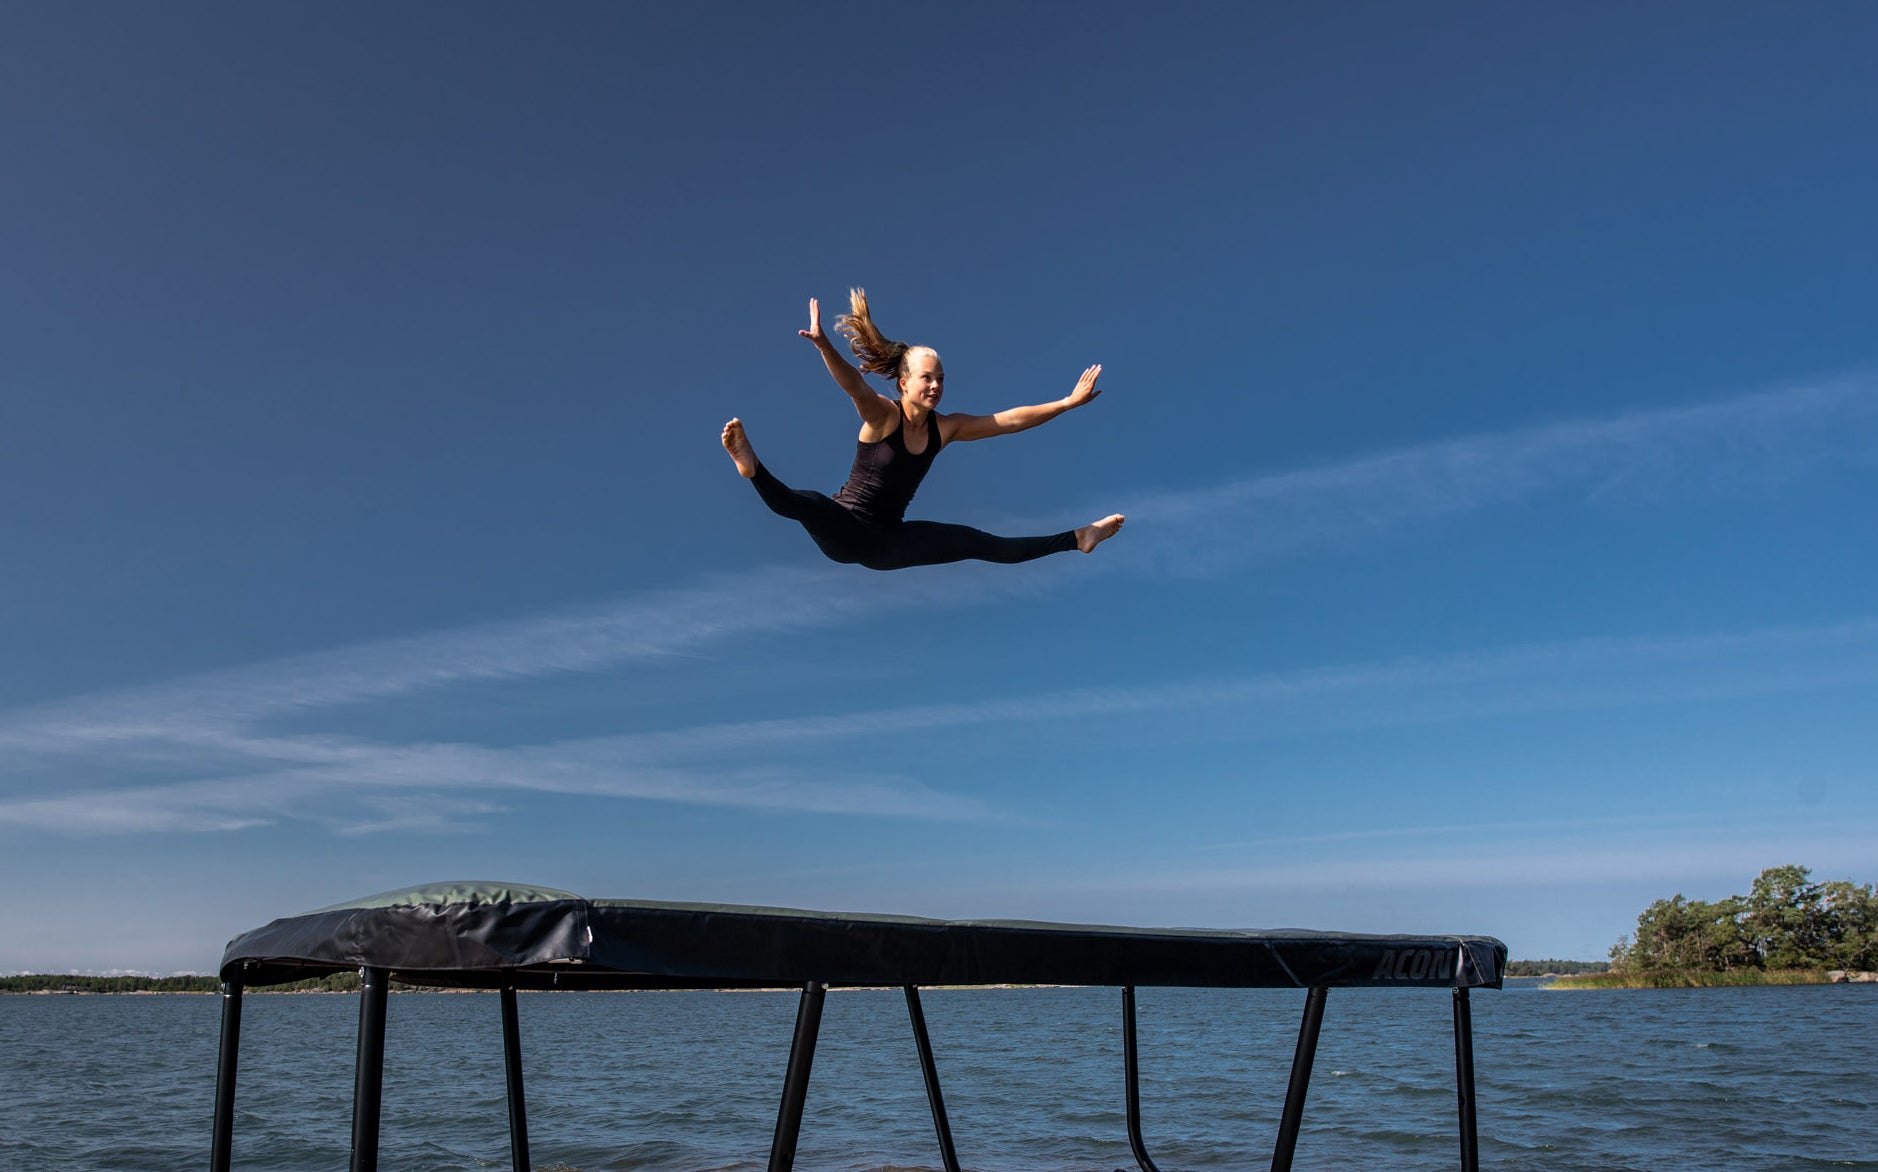 A woman jumps on Acon 13HD trampoline in an archipelago landscape